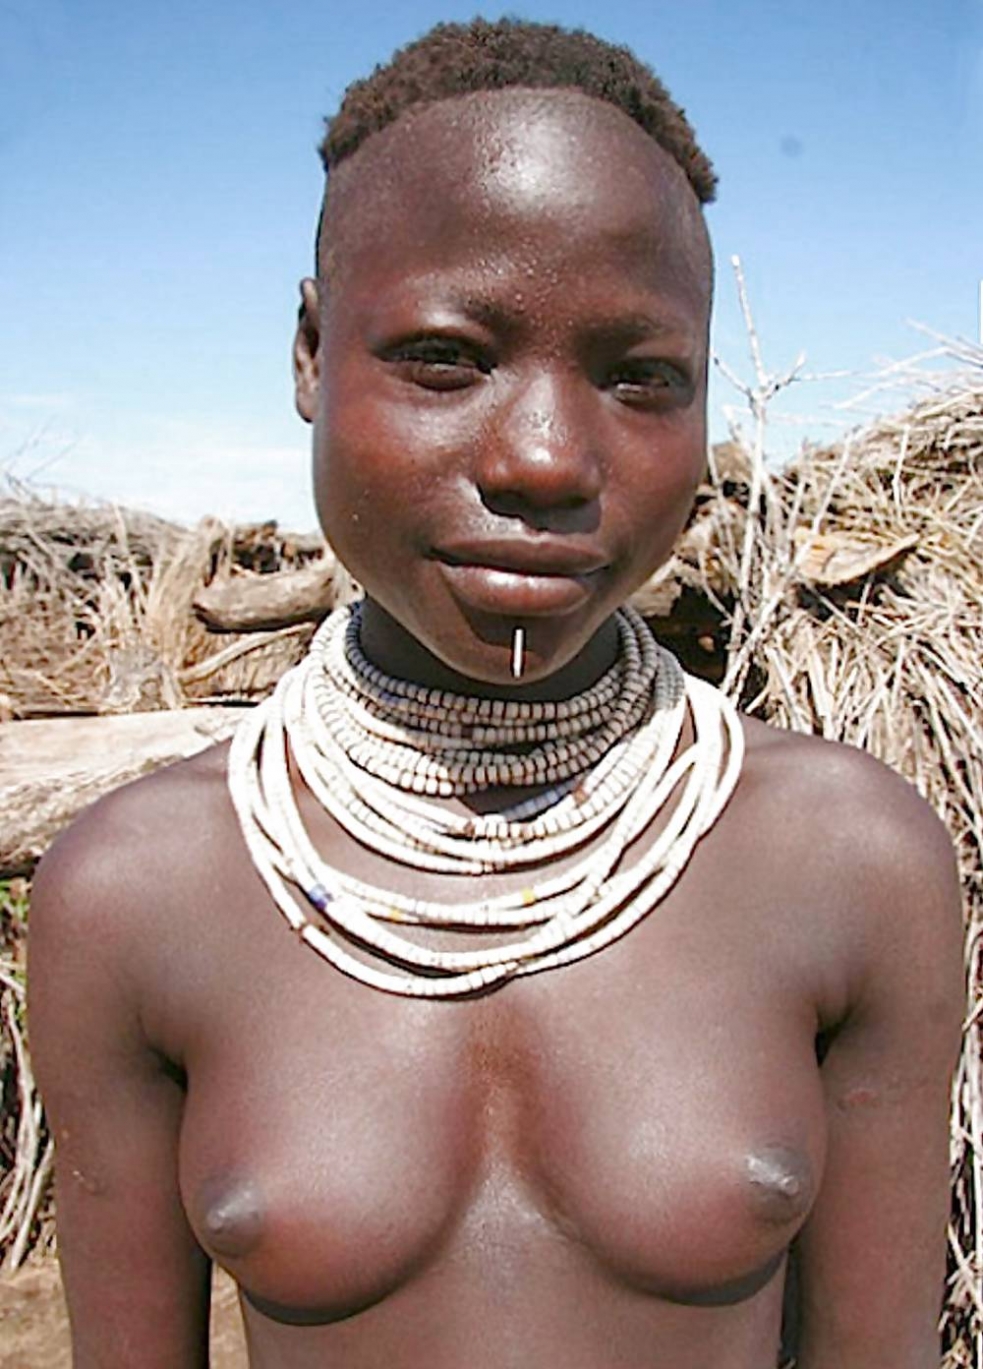 грудь женщин африканских племен фото 113